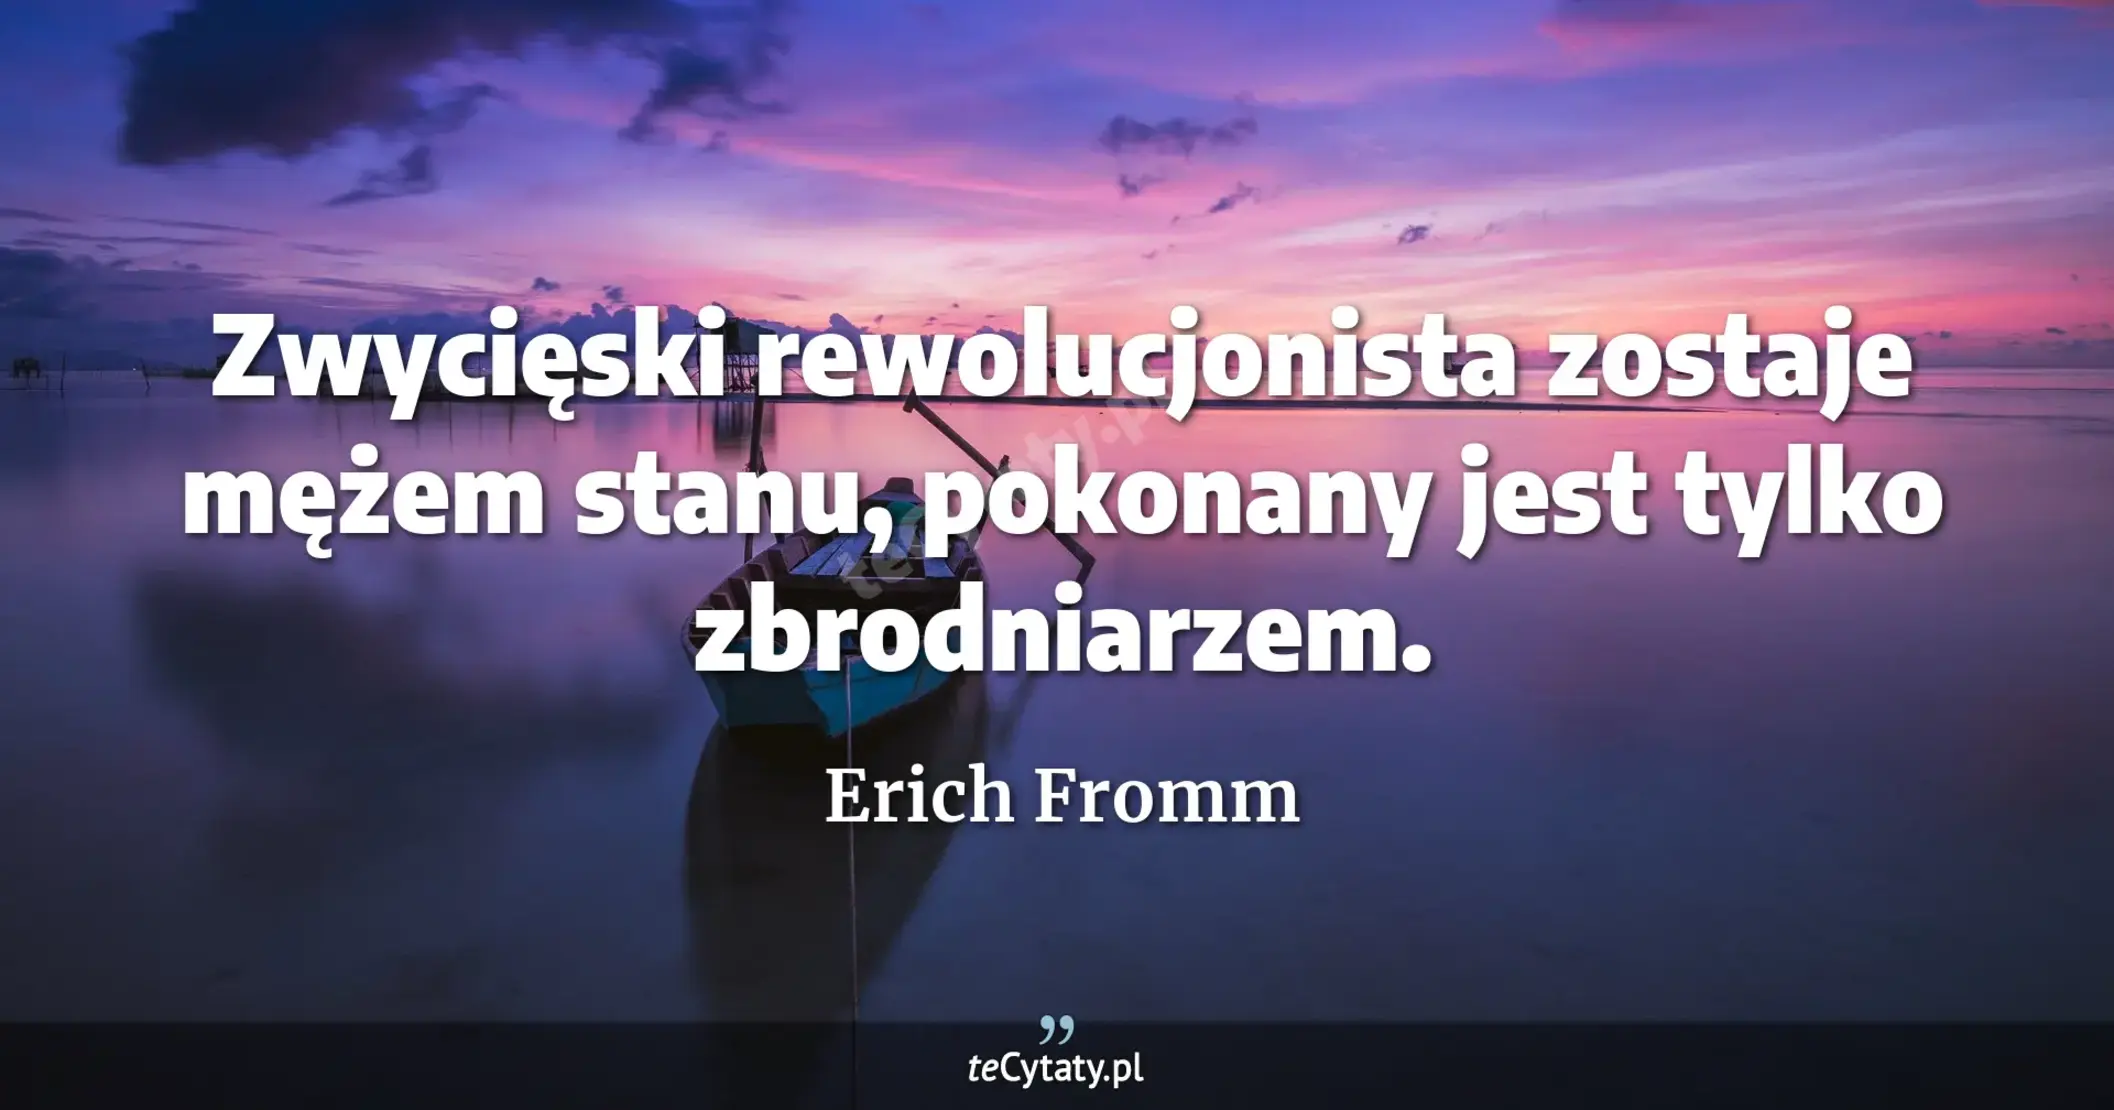 Zwycięski rewolucjonista zostaje mężem stanu, pokonany jest tylko zbrodniarzem. - Erich Fromm